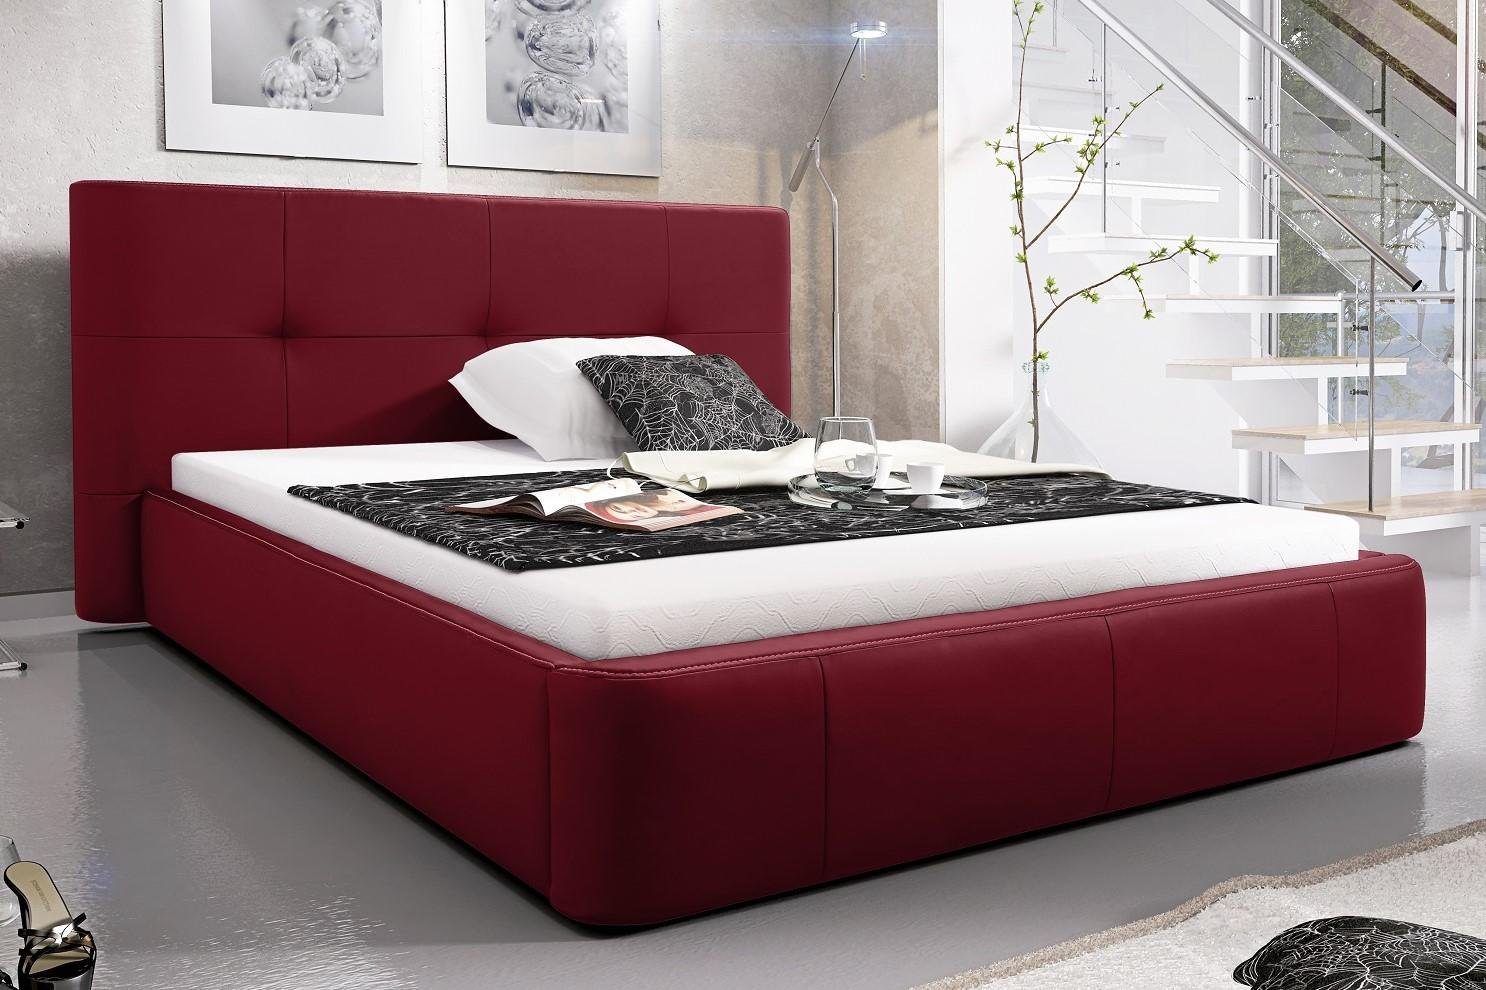 Leder Polster Design Zimmer Rot Bett, Hotel JVmoebel Betten Luxus Bett Doppel Schlaf